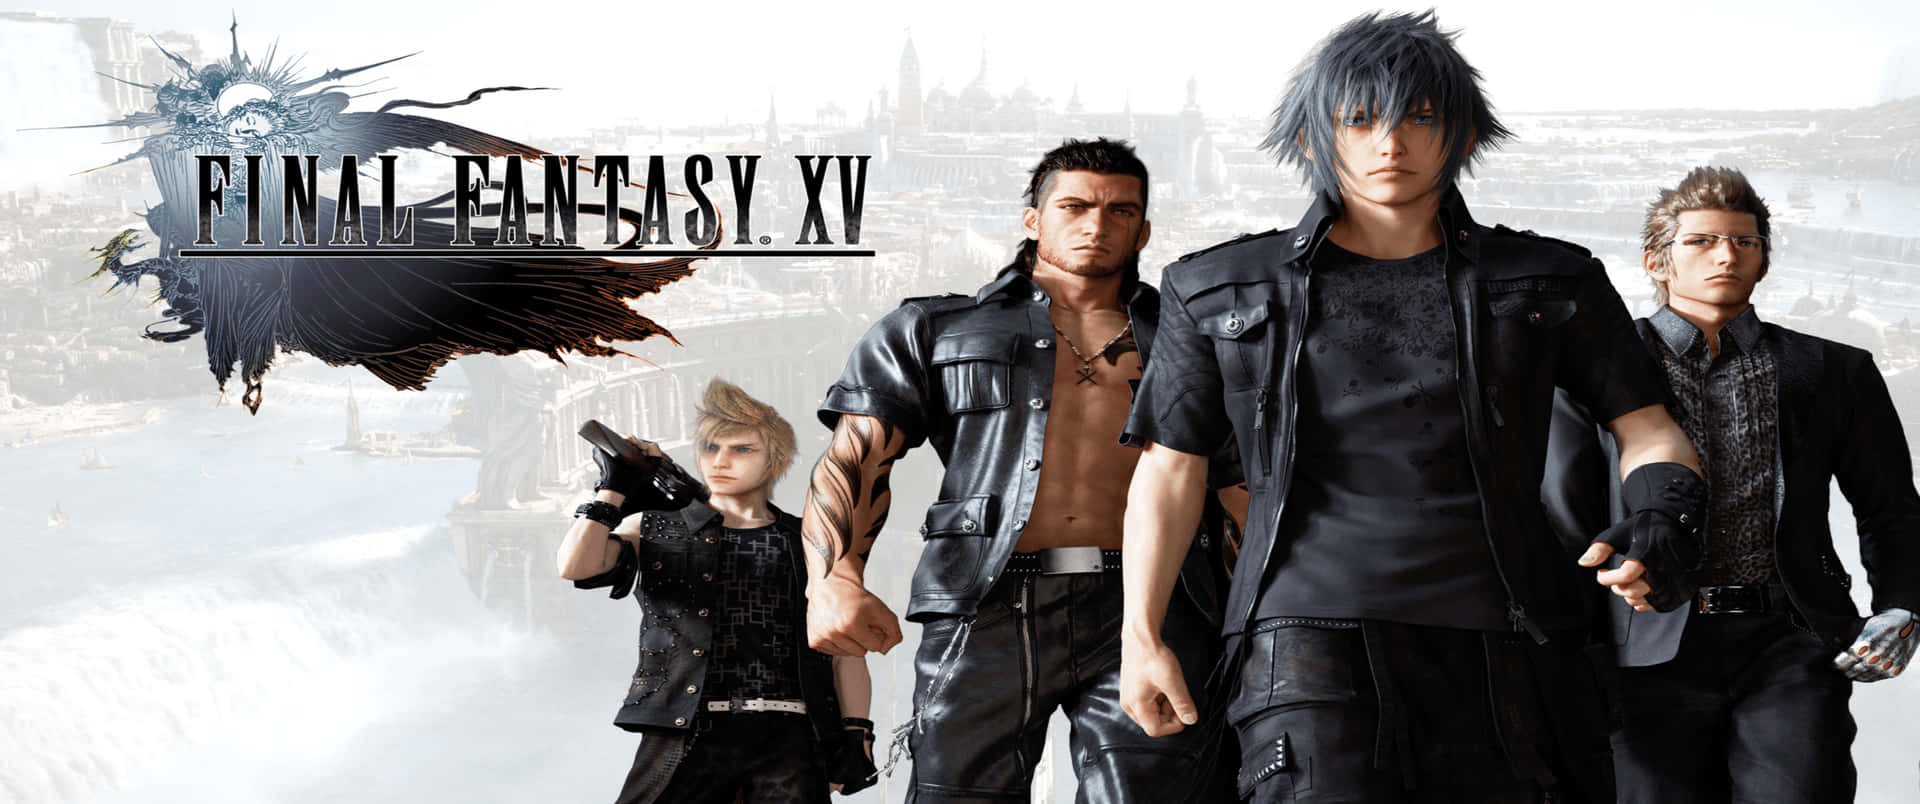 3440x1440p Final Fantasy Xv Hintergrund